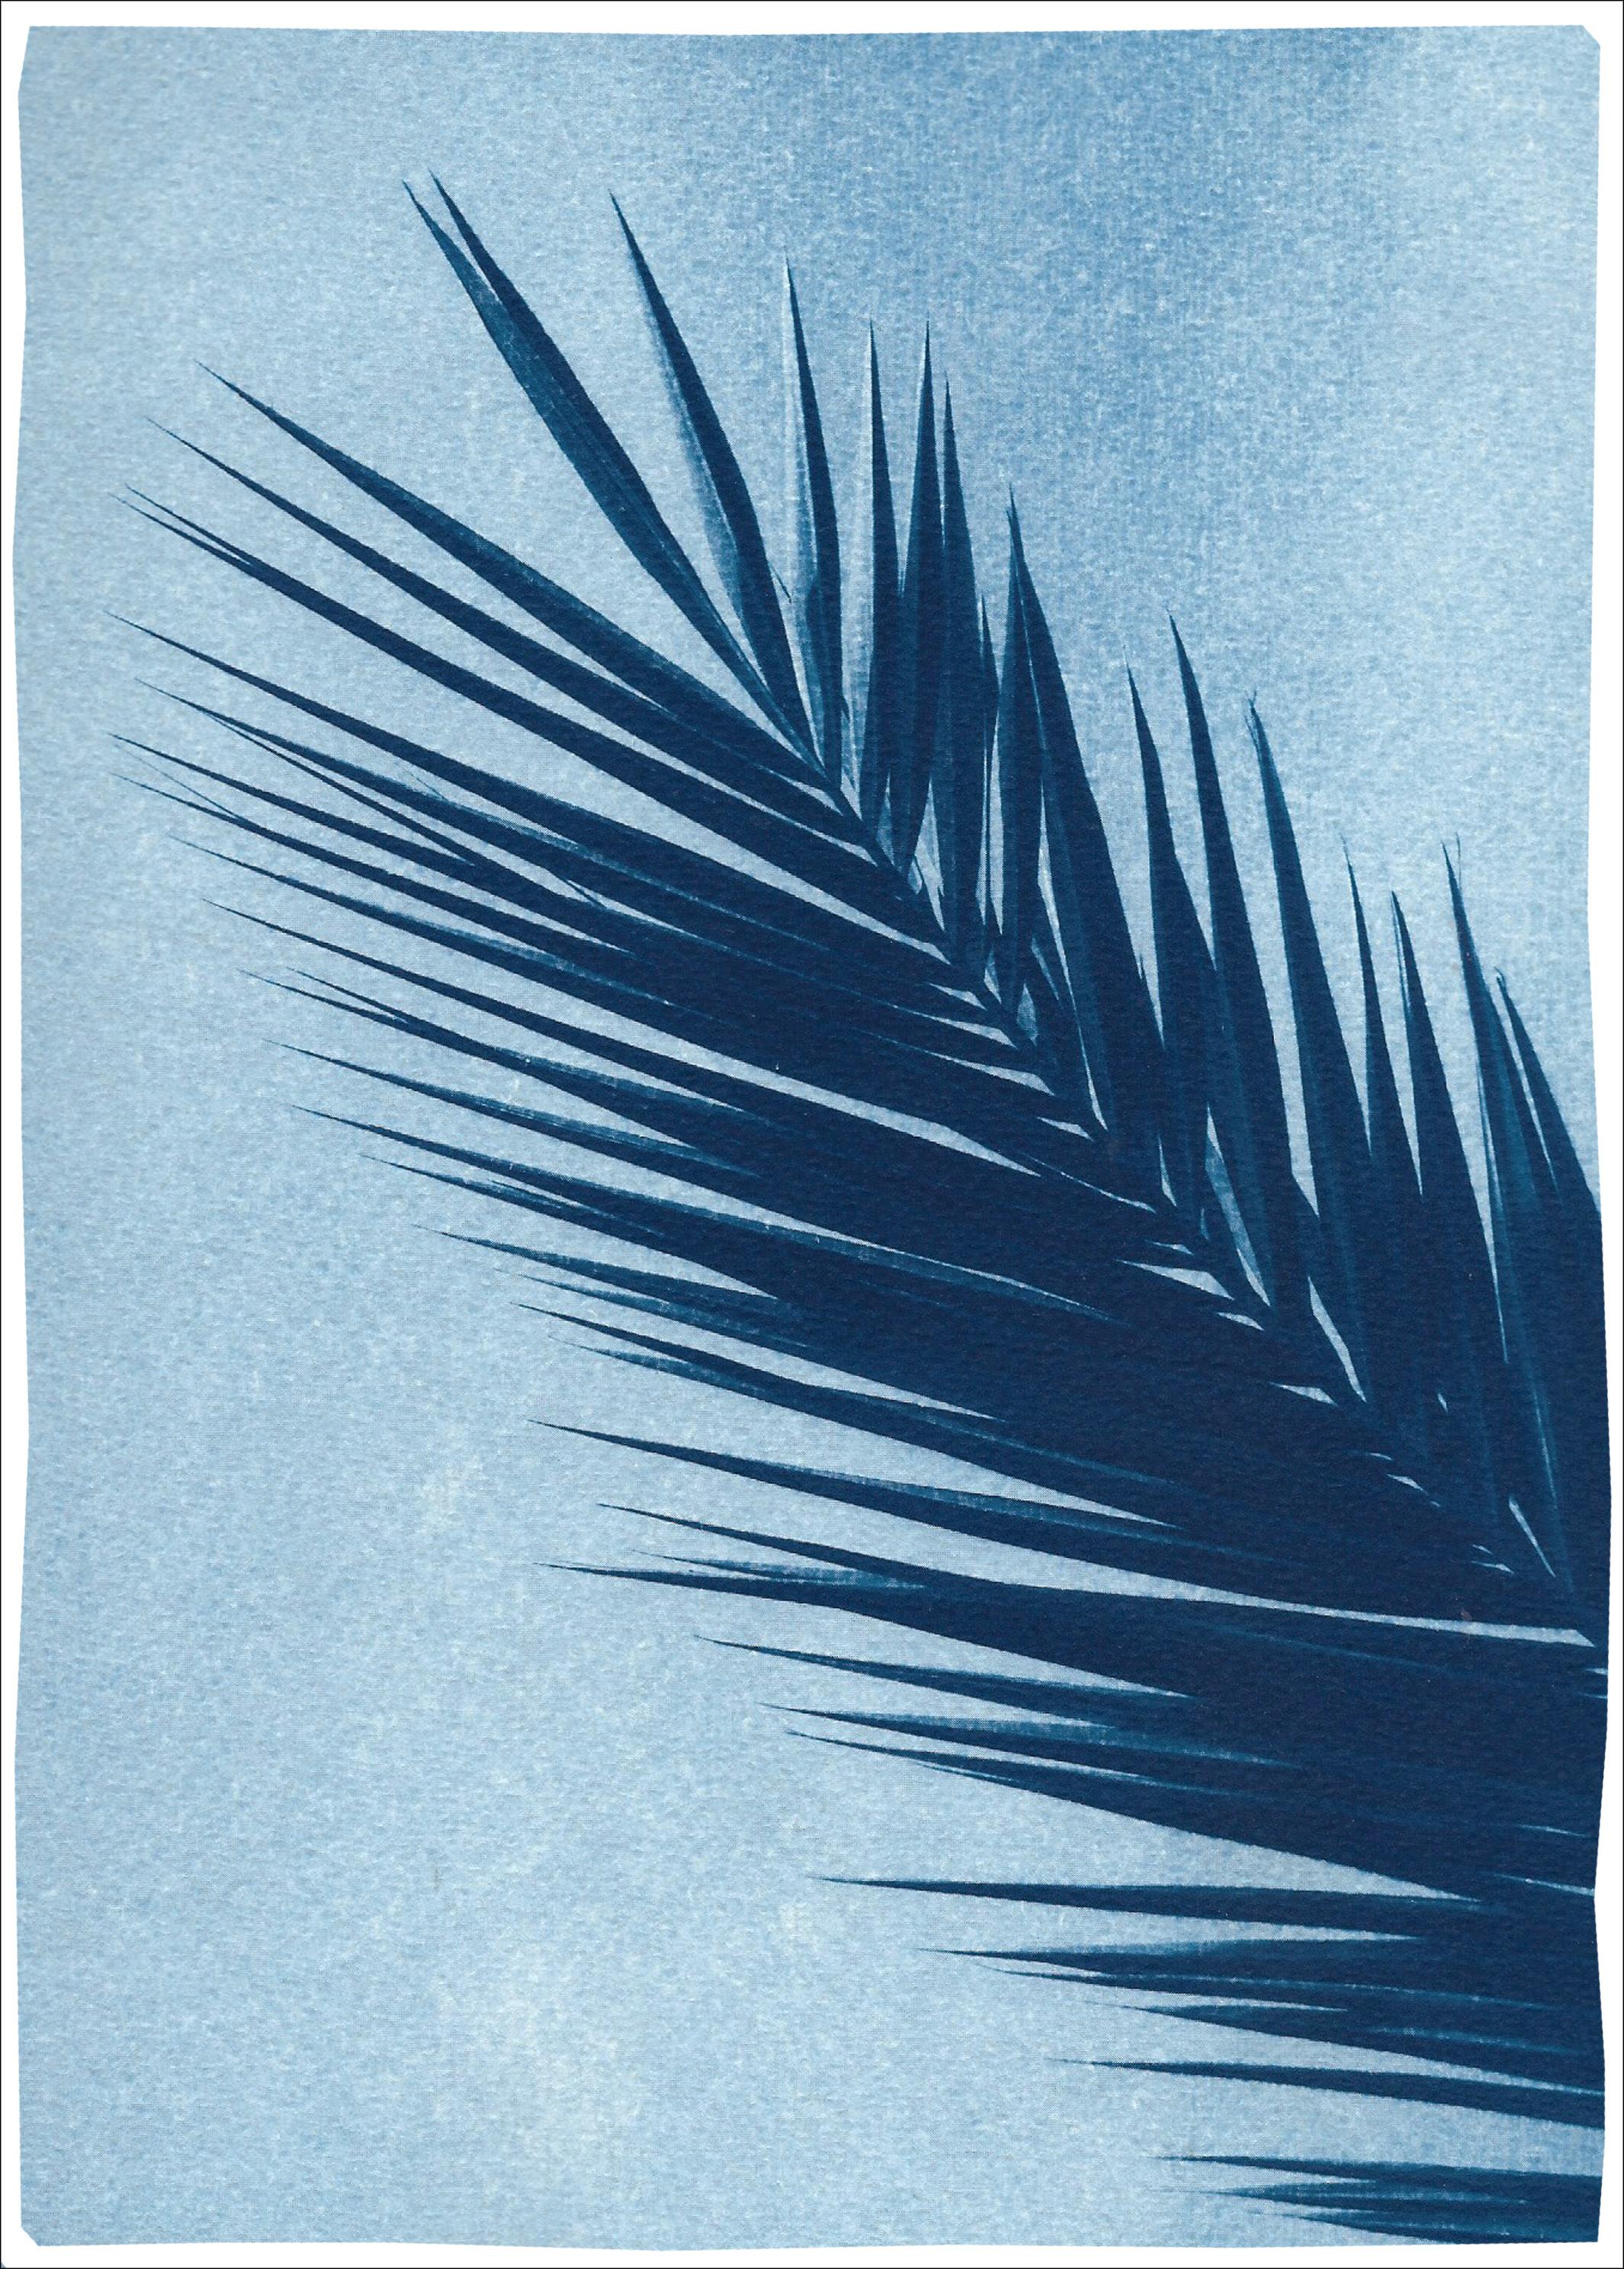 Kind of Cyan Landscape Art - Palm Leaf Over Blue Sky, Handmade Botanical Cyanotype on Paper, Tropical Vintage